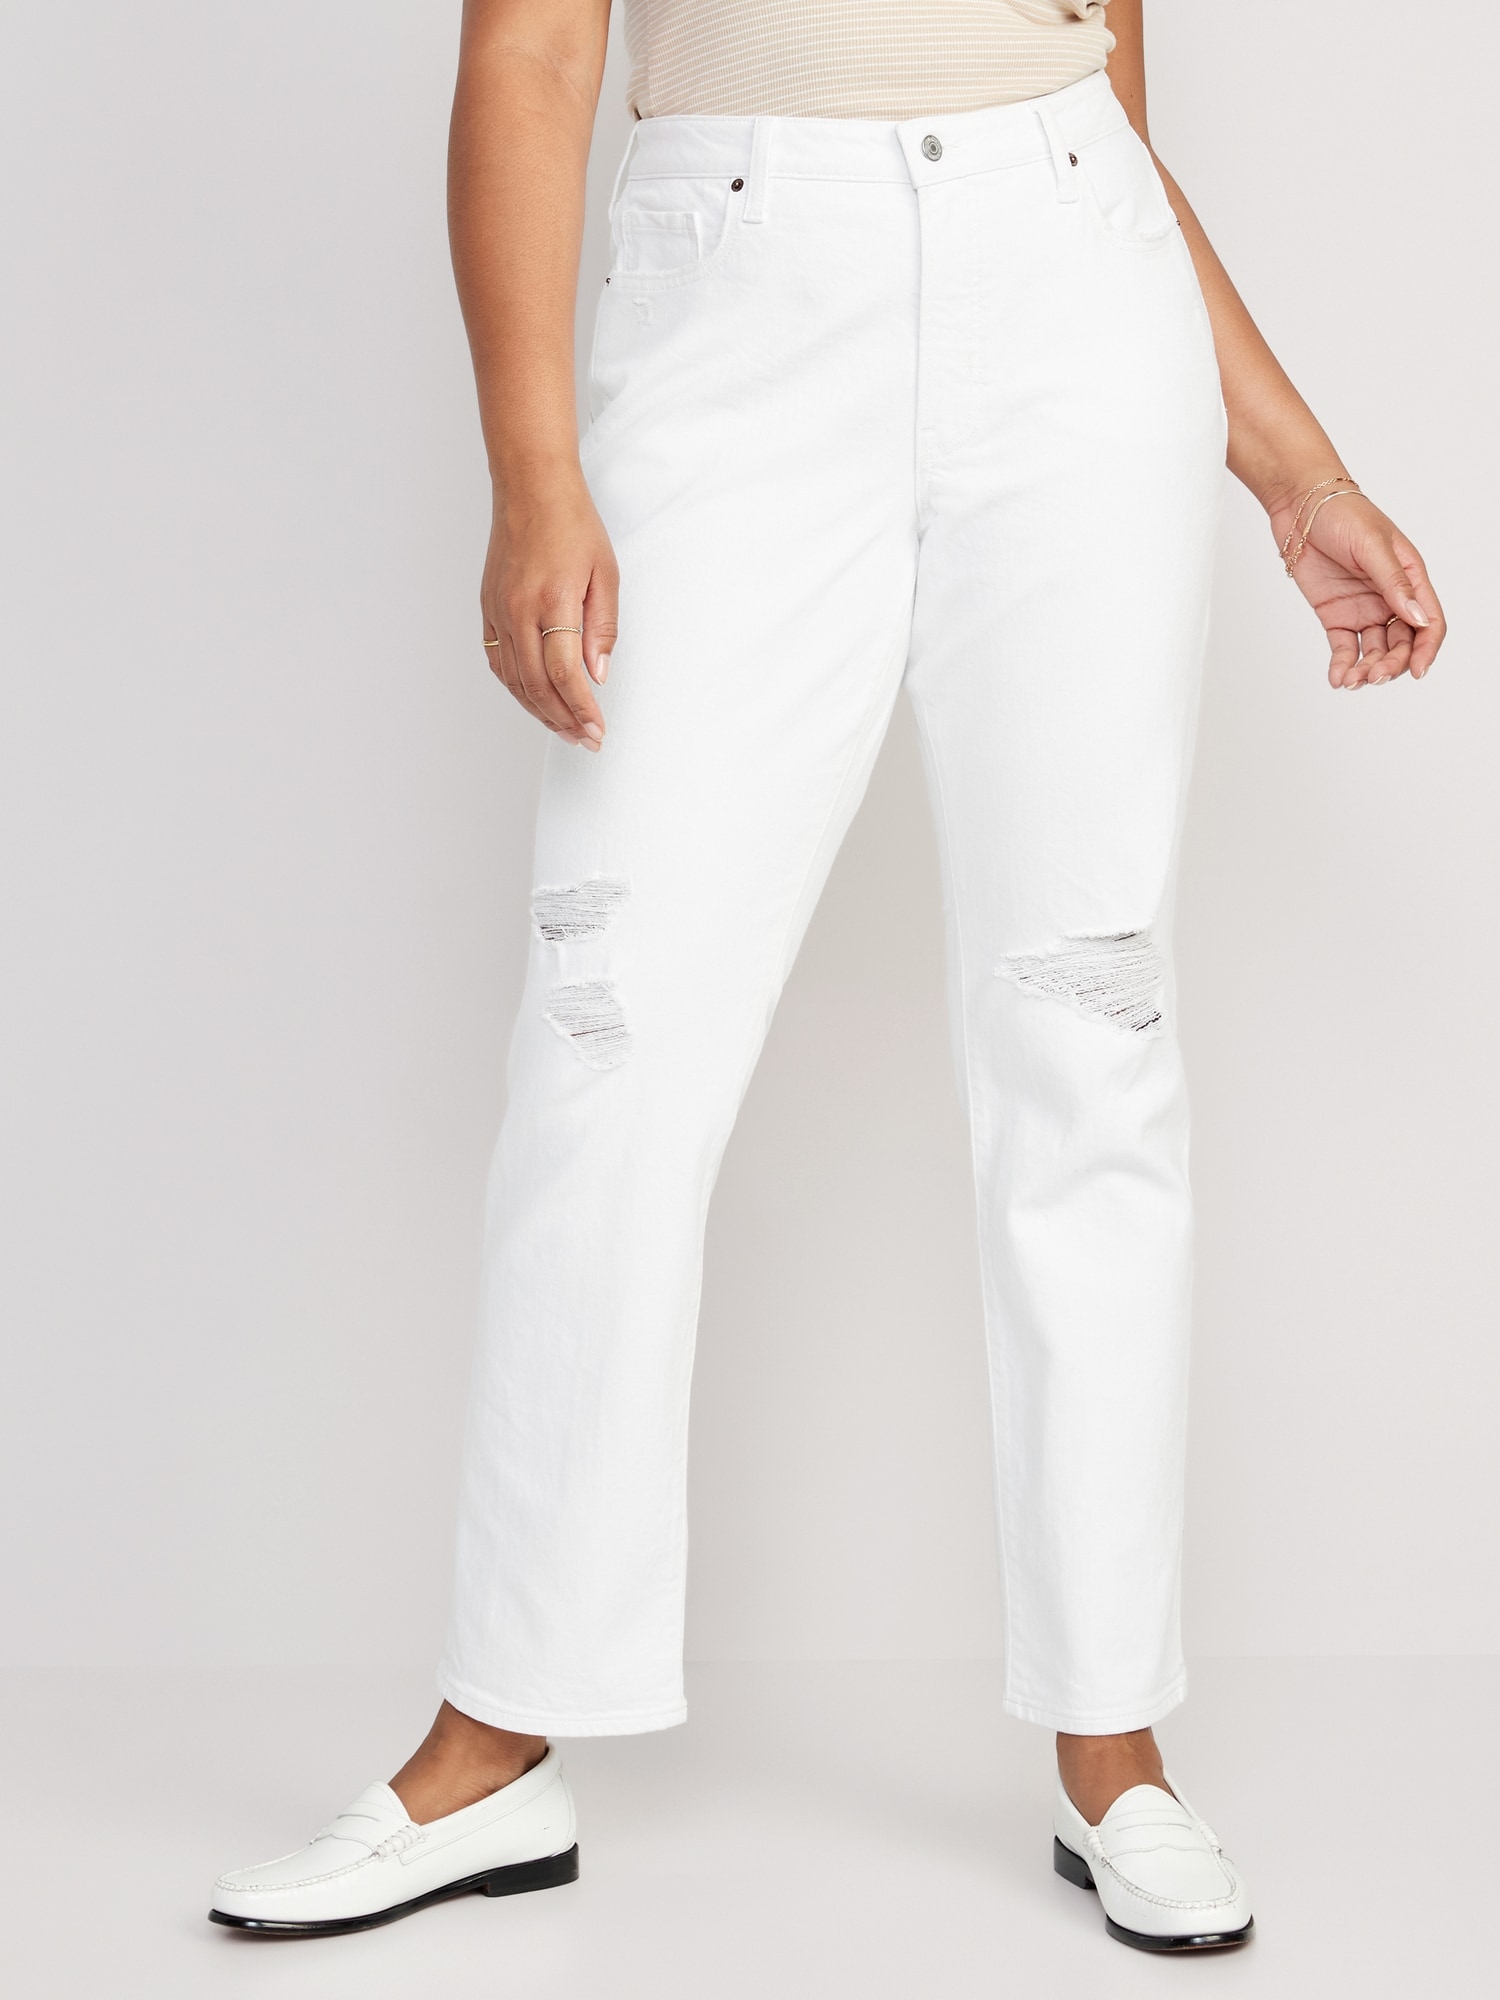 Of later kant Verkleuren High-Waisted OG Straight White-Wash Ripped Jeans for Women | Old Navy